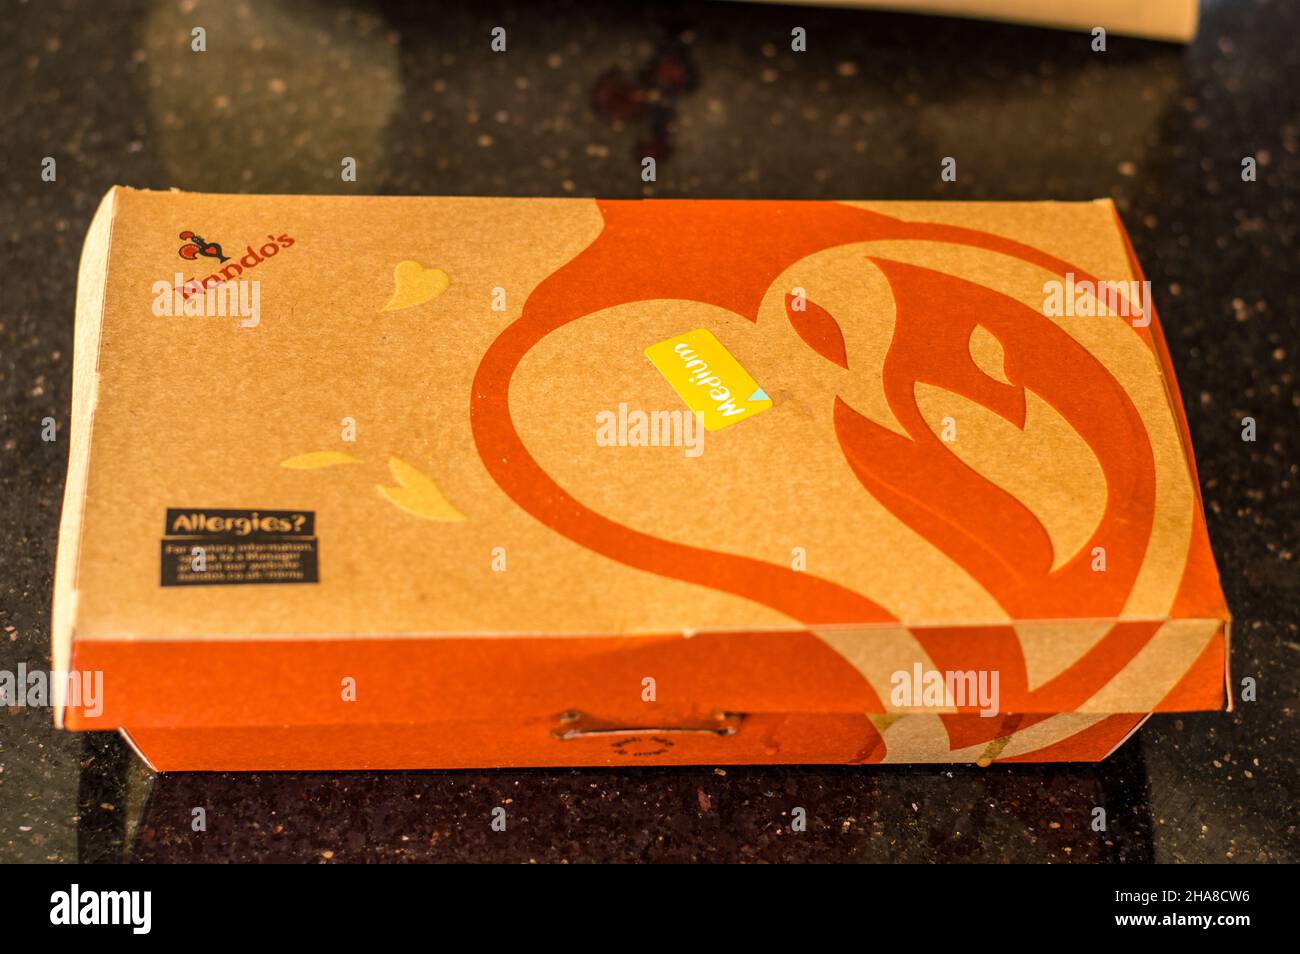 Pollo da togliere Nandos peri confezionato in scatola di cartone per un imballaggio responsabile e rispettoso dell'ambiente. Foto Stock